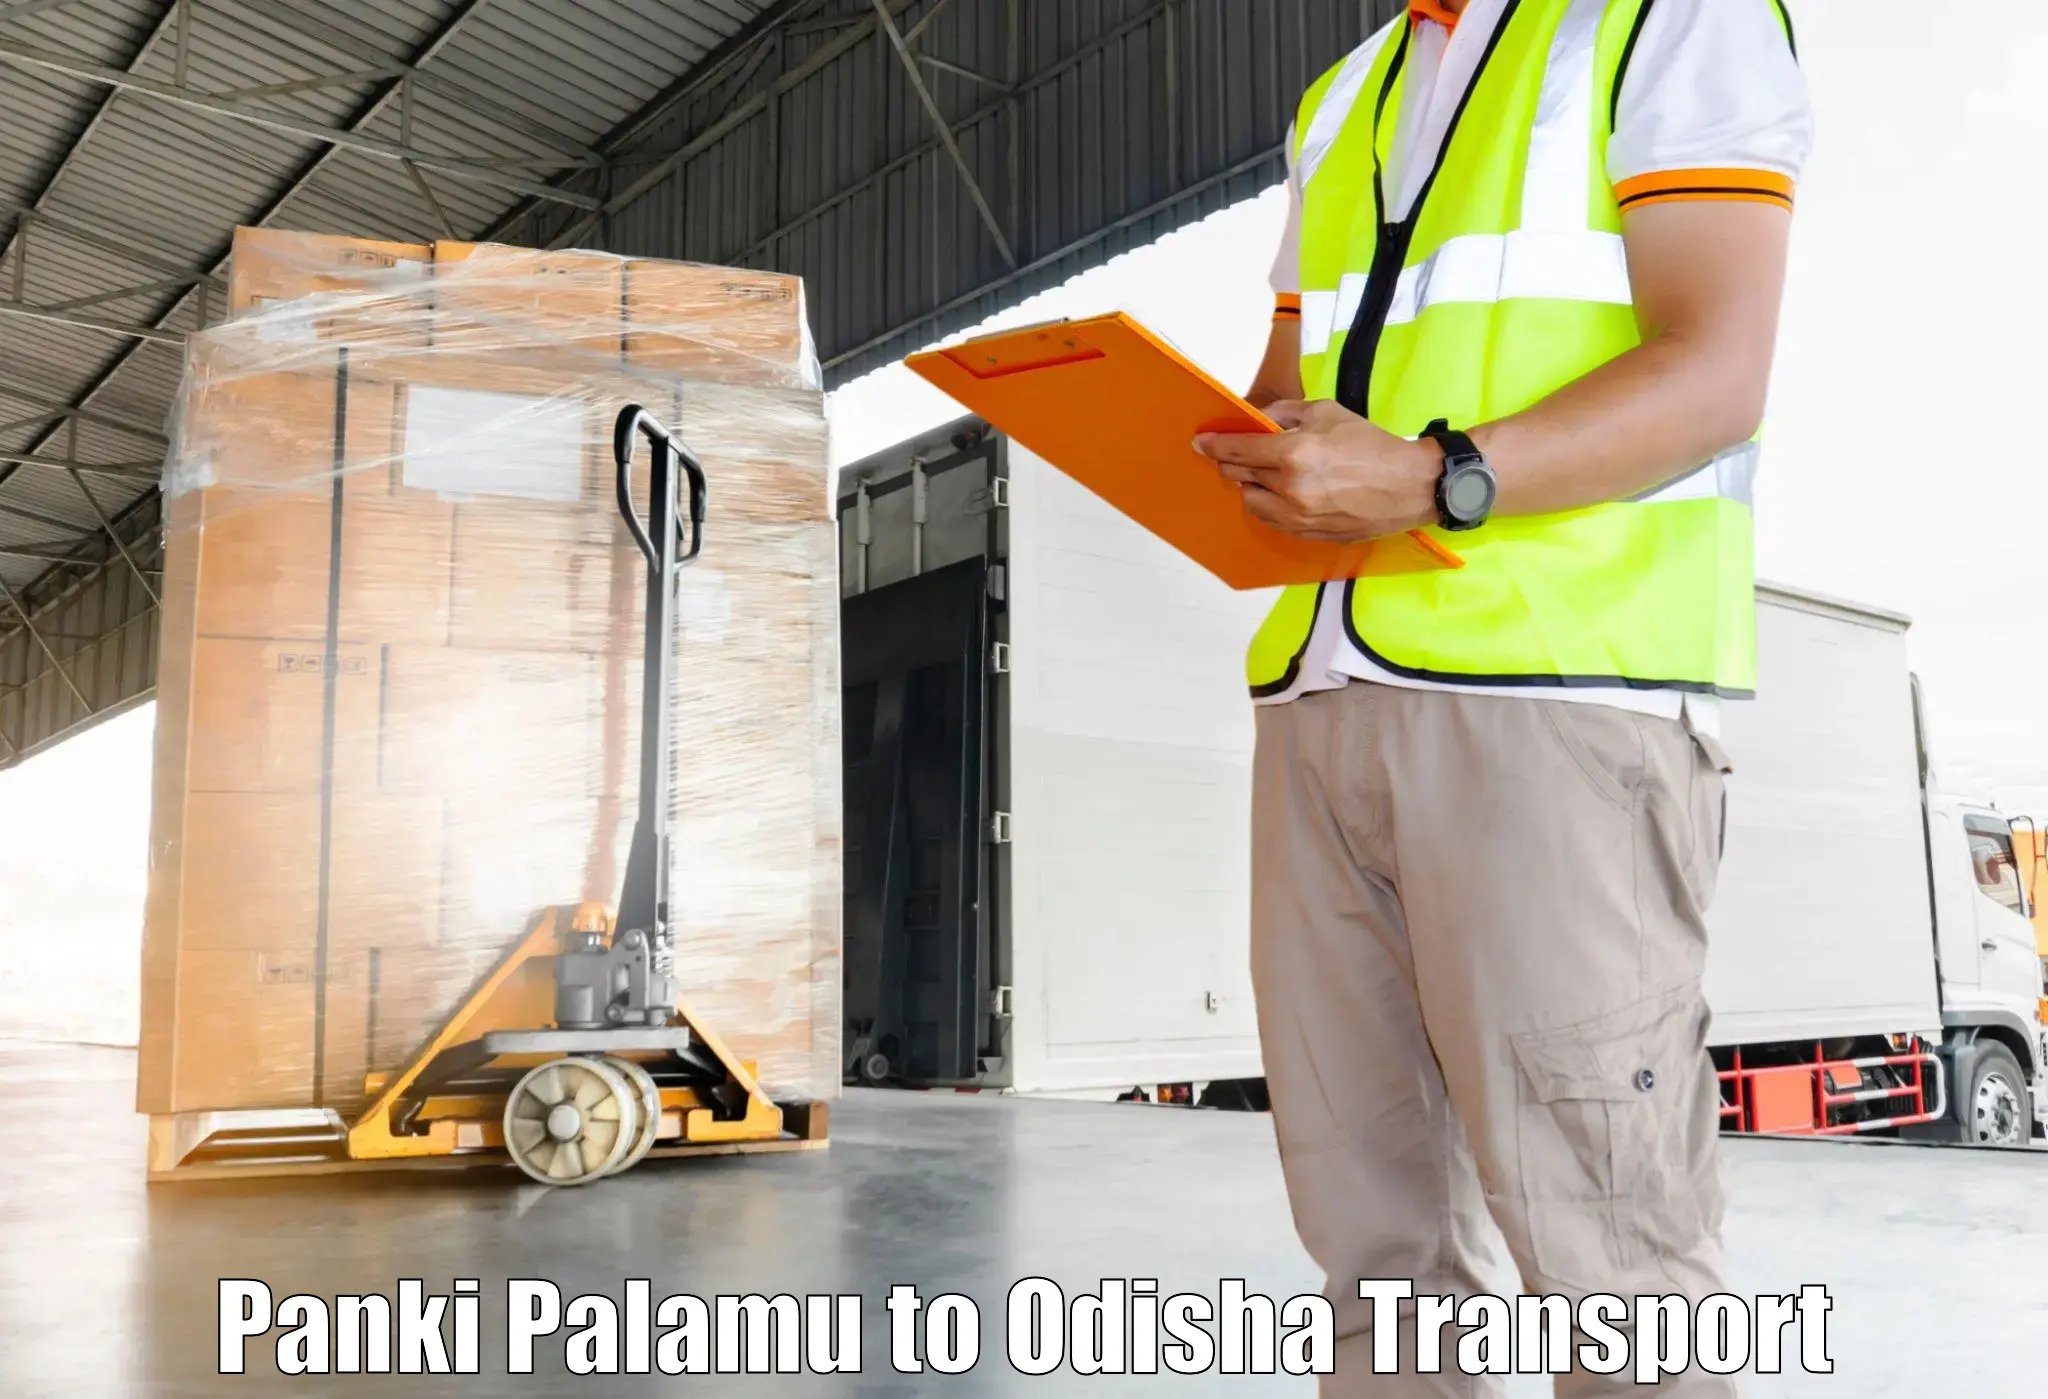 Air freight transport services in Panki Palamu to Kalimela